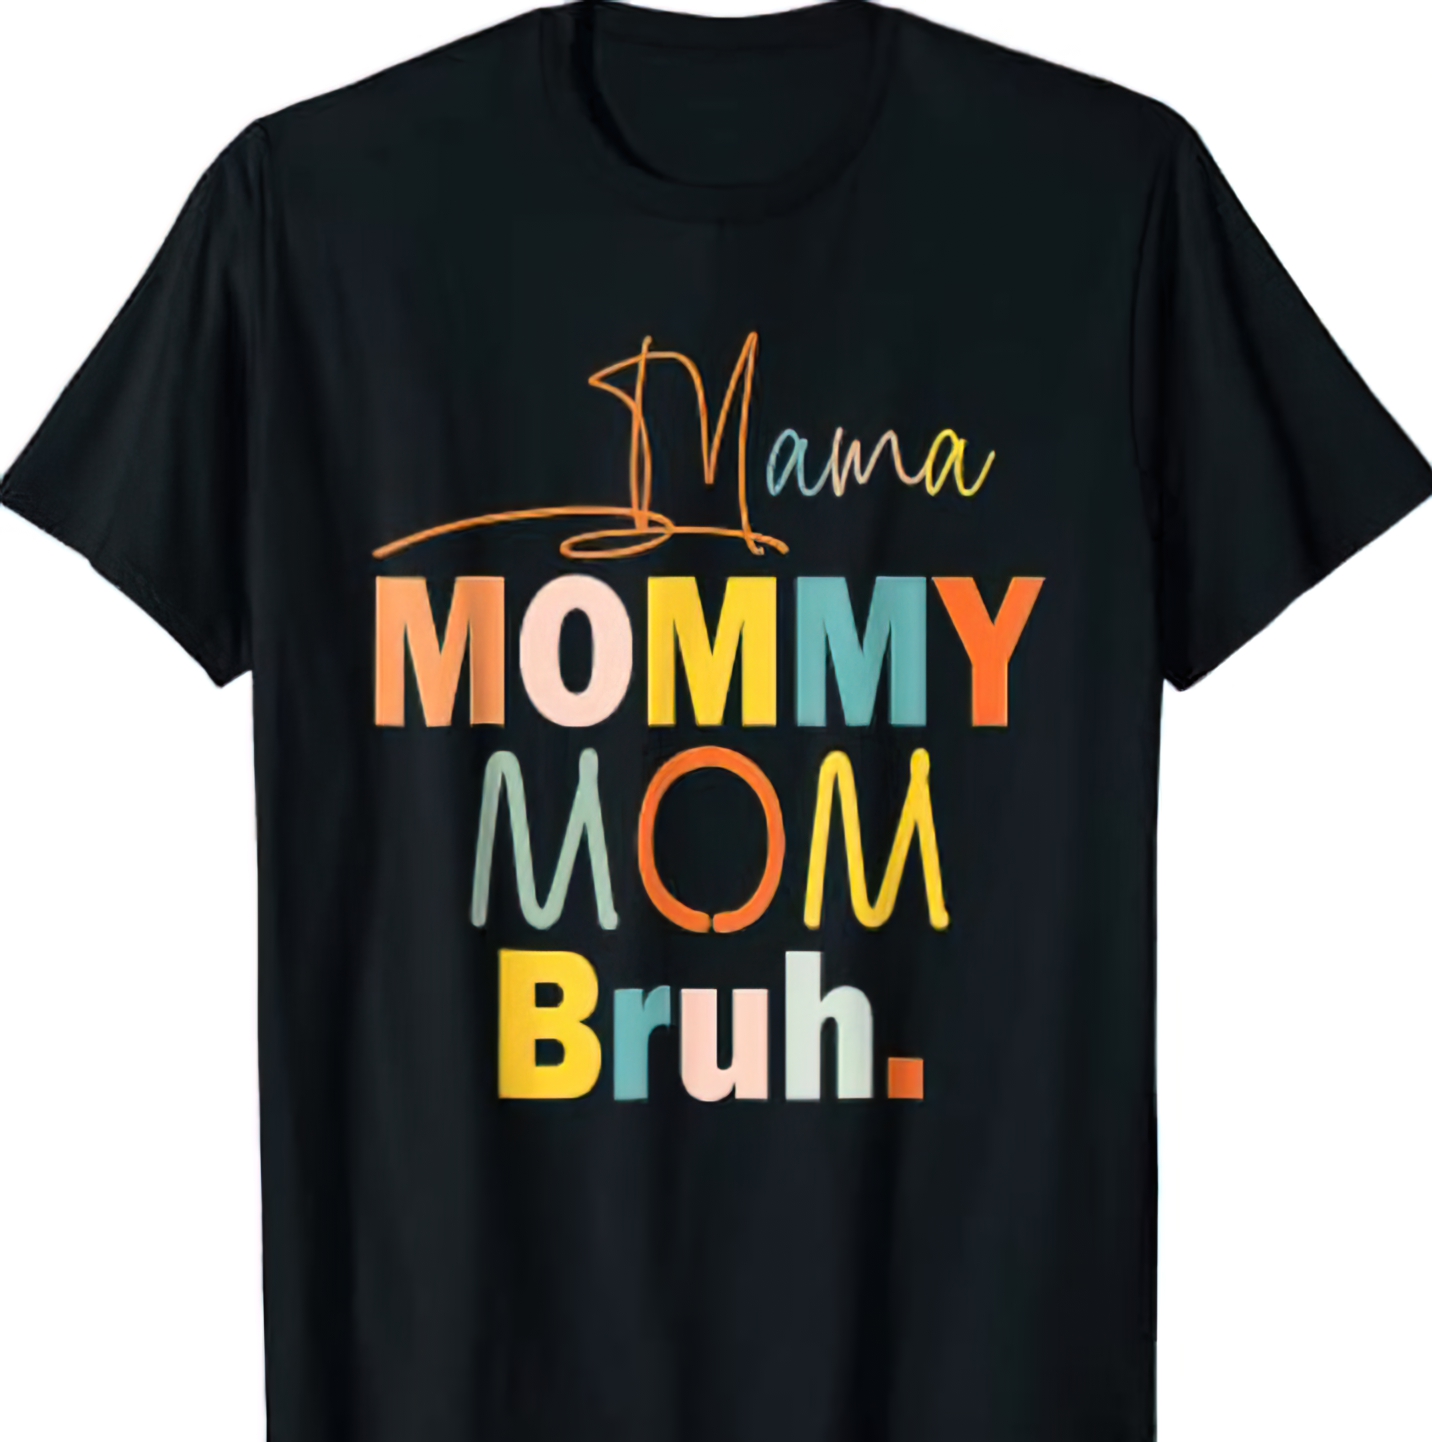 Mama mommy mom bruh shirt - Endastore.com